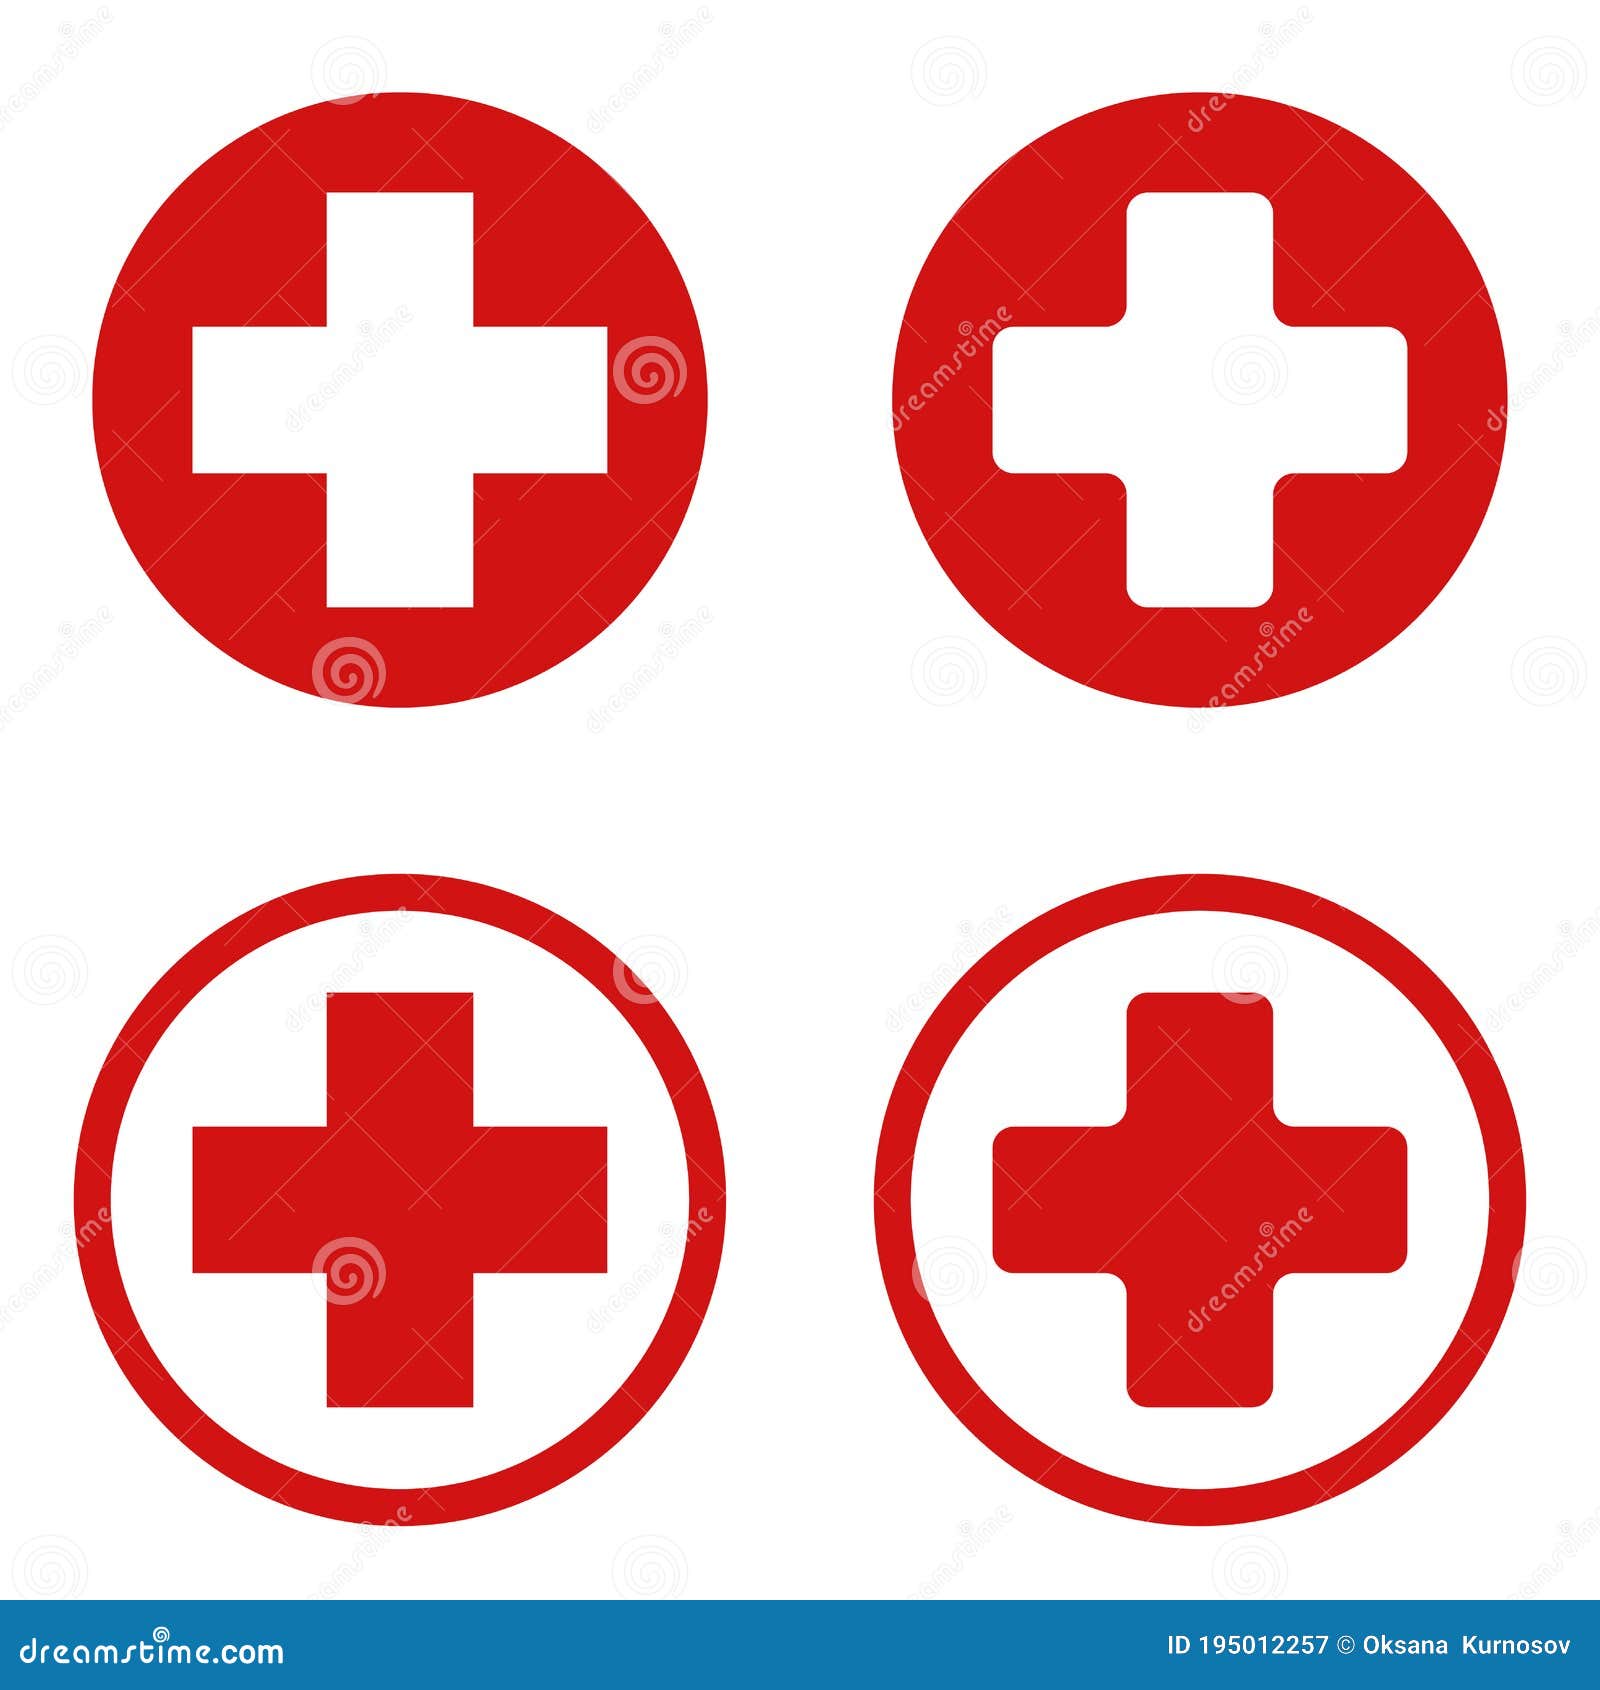 Телефоны больницы красного креста. Медицинский крест вектор. Красный крест в круге на белом фоне. Медицинский знак крест вектор. Госпиталь знак крест.